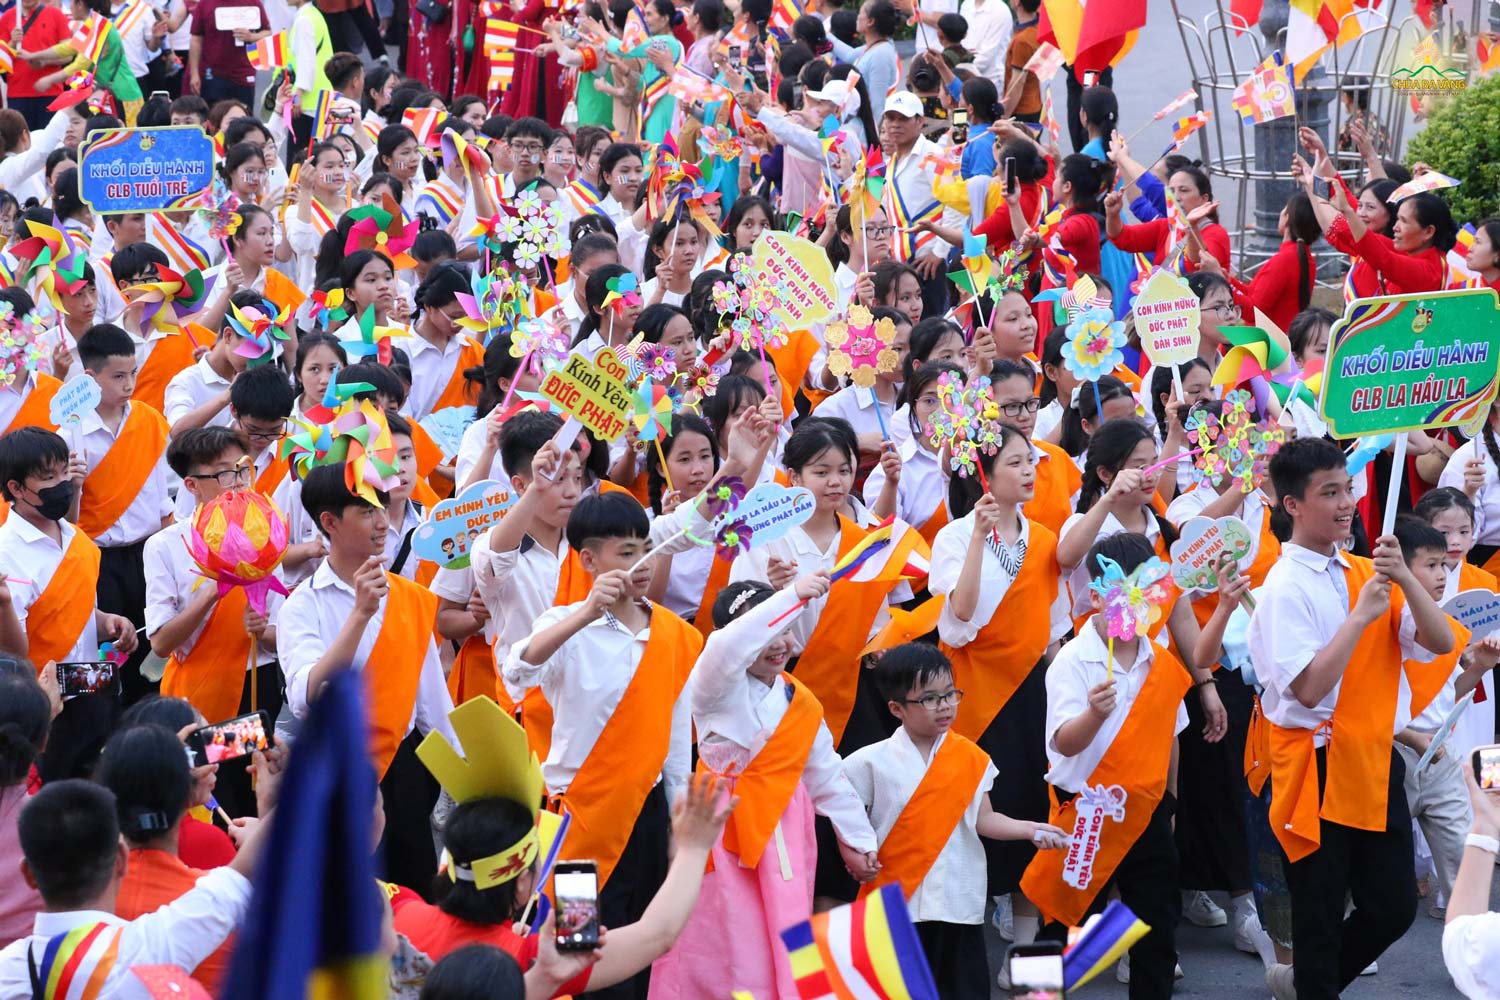 Khối diễu hành CLB La Hầu La kính mừng Đức Phật đản sinh